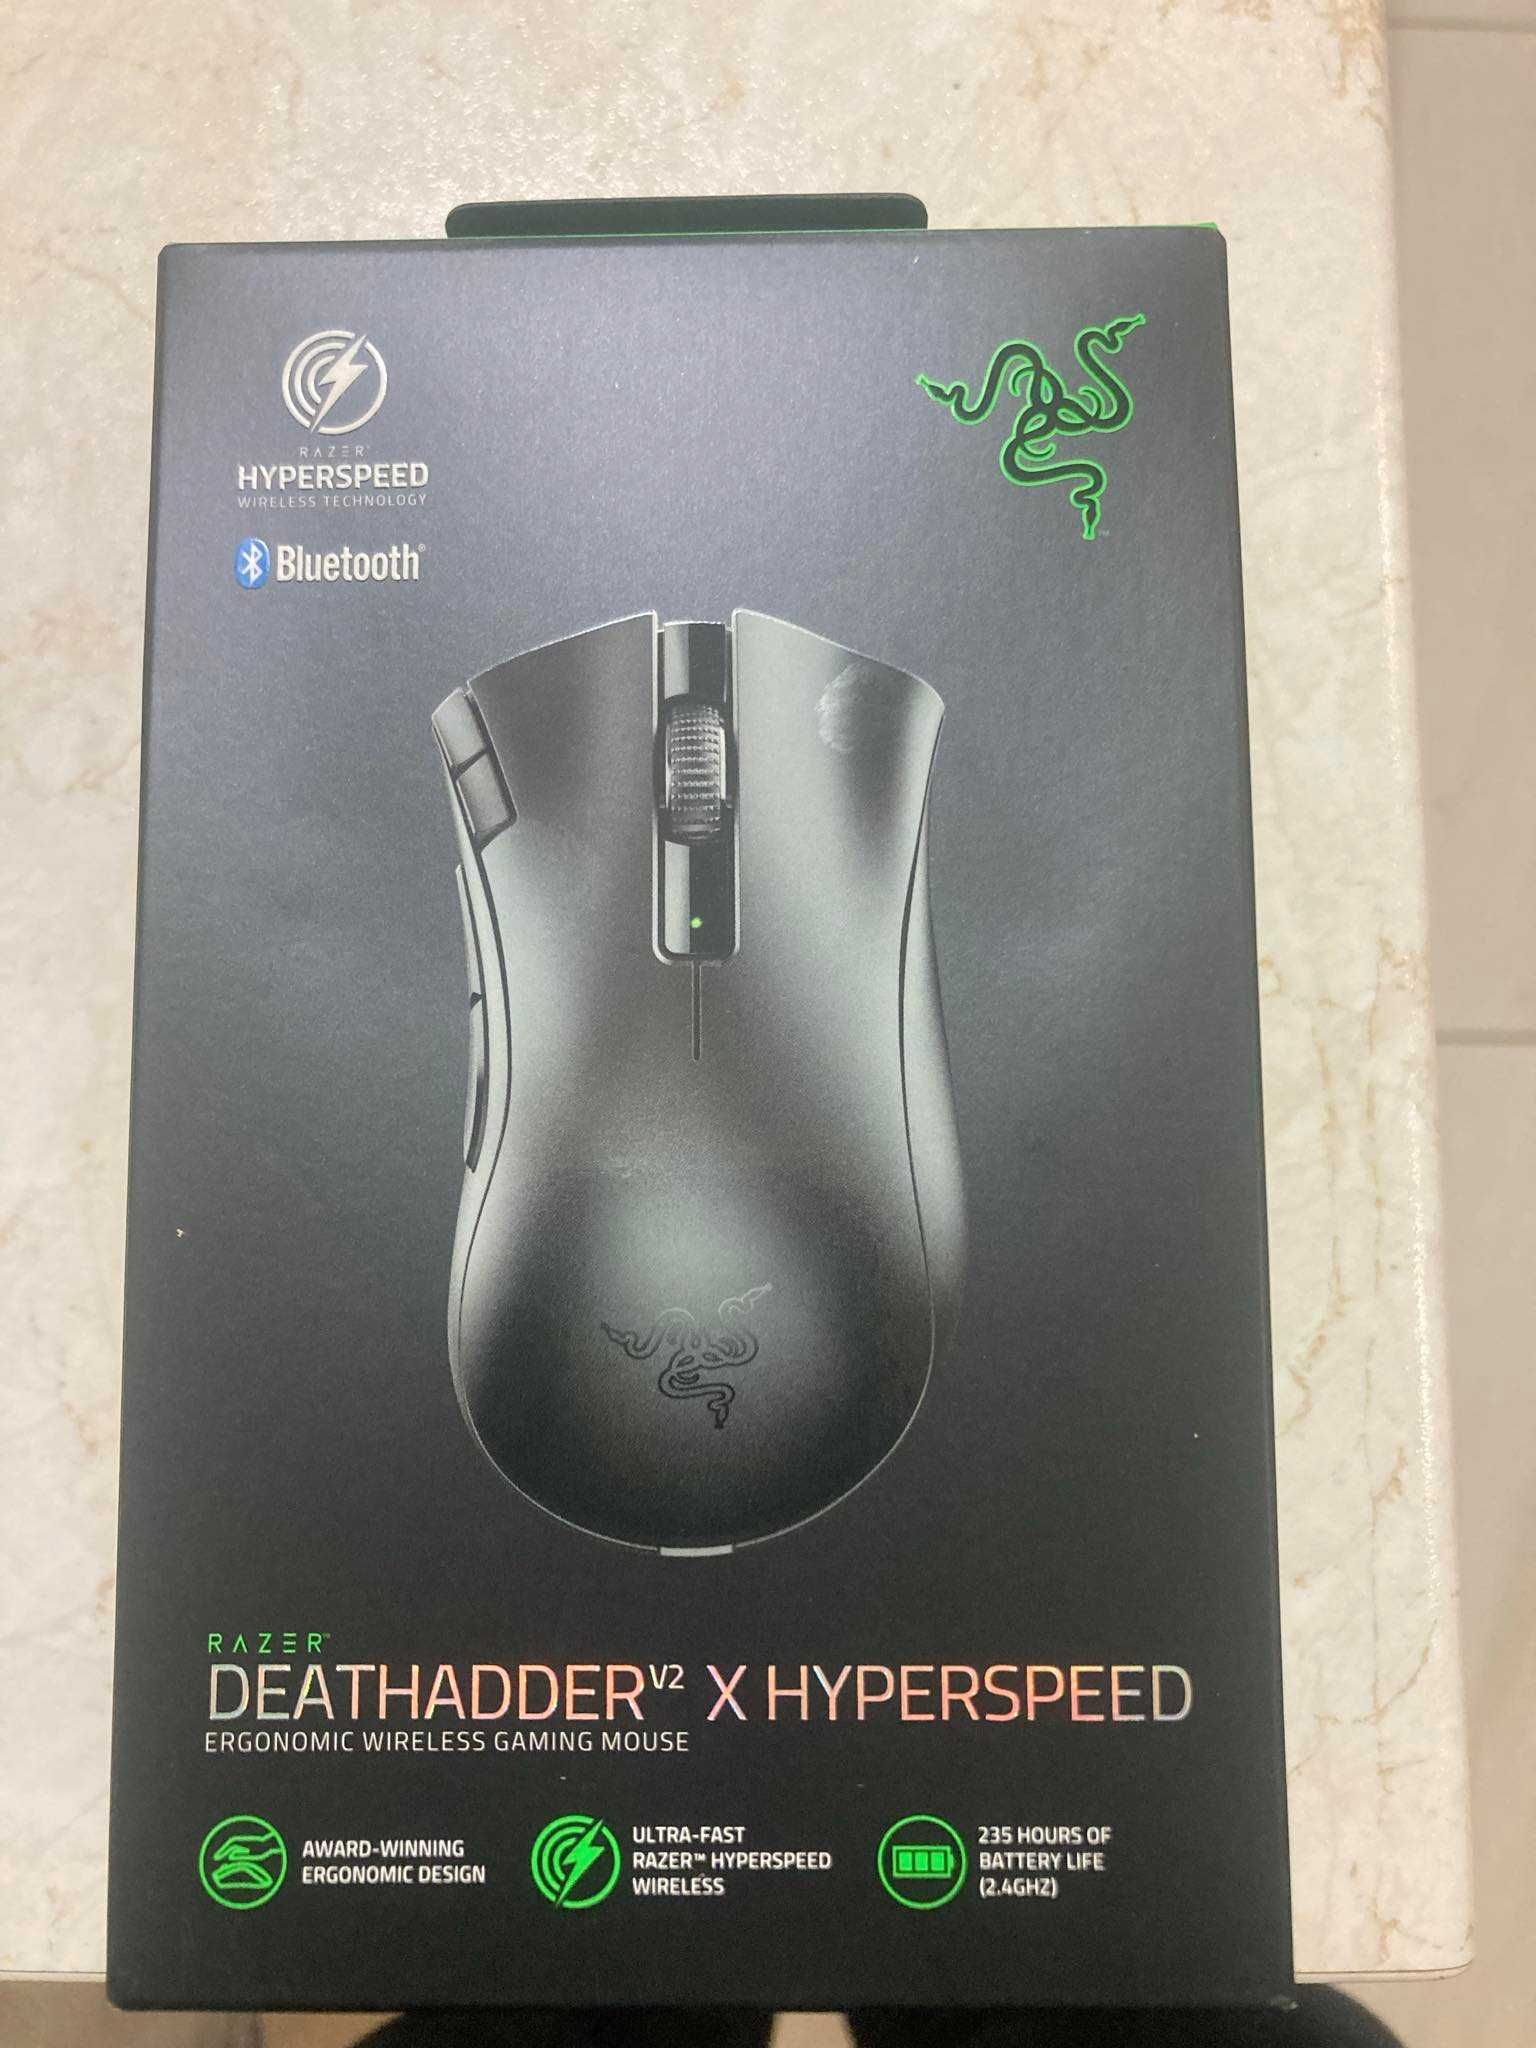 Razer Deathadder v2 Hyperspeed bezprzewodowa myszka GRY